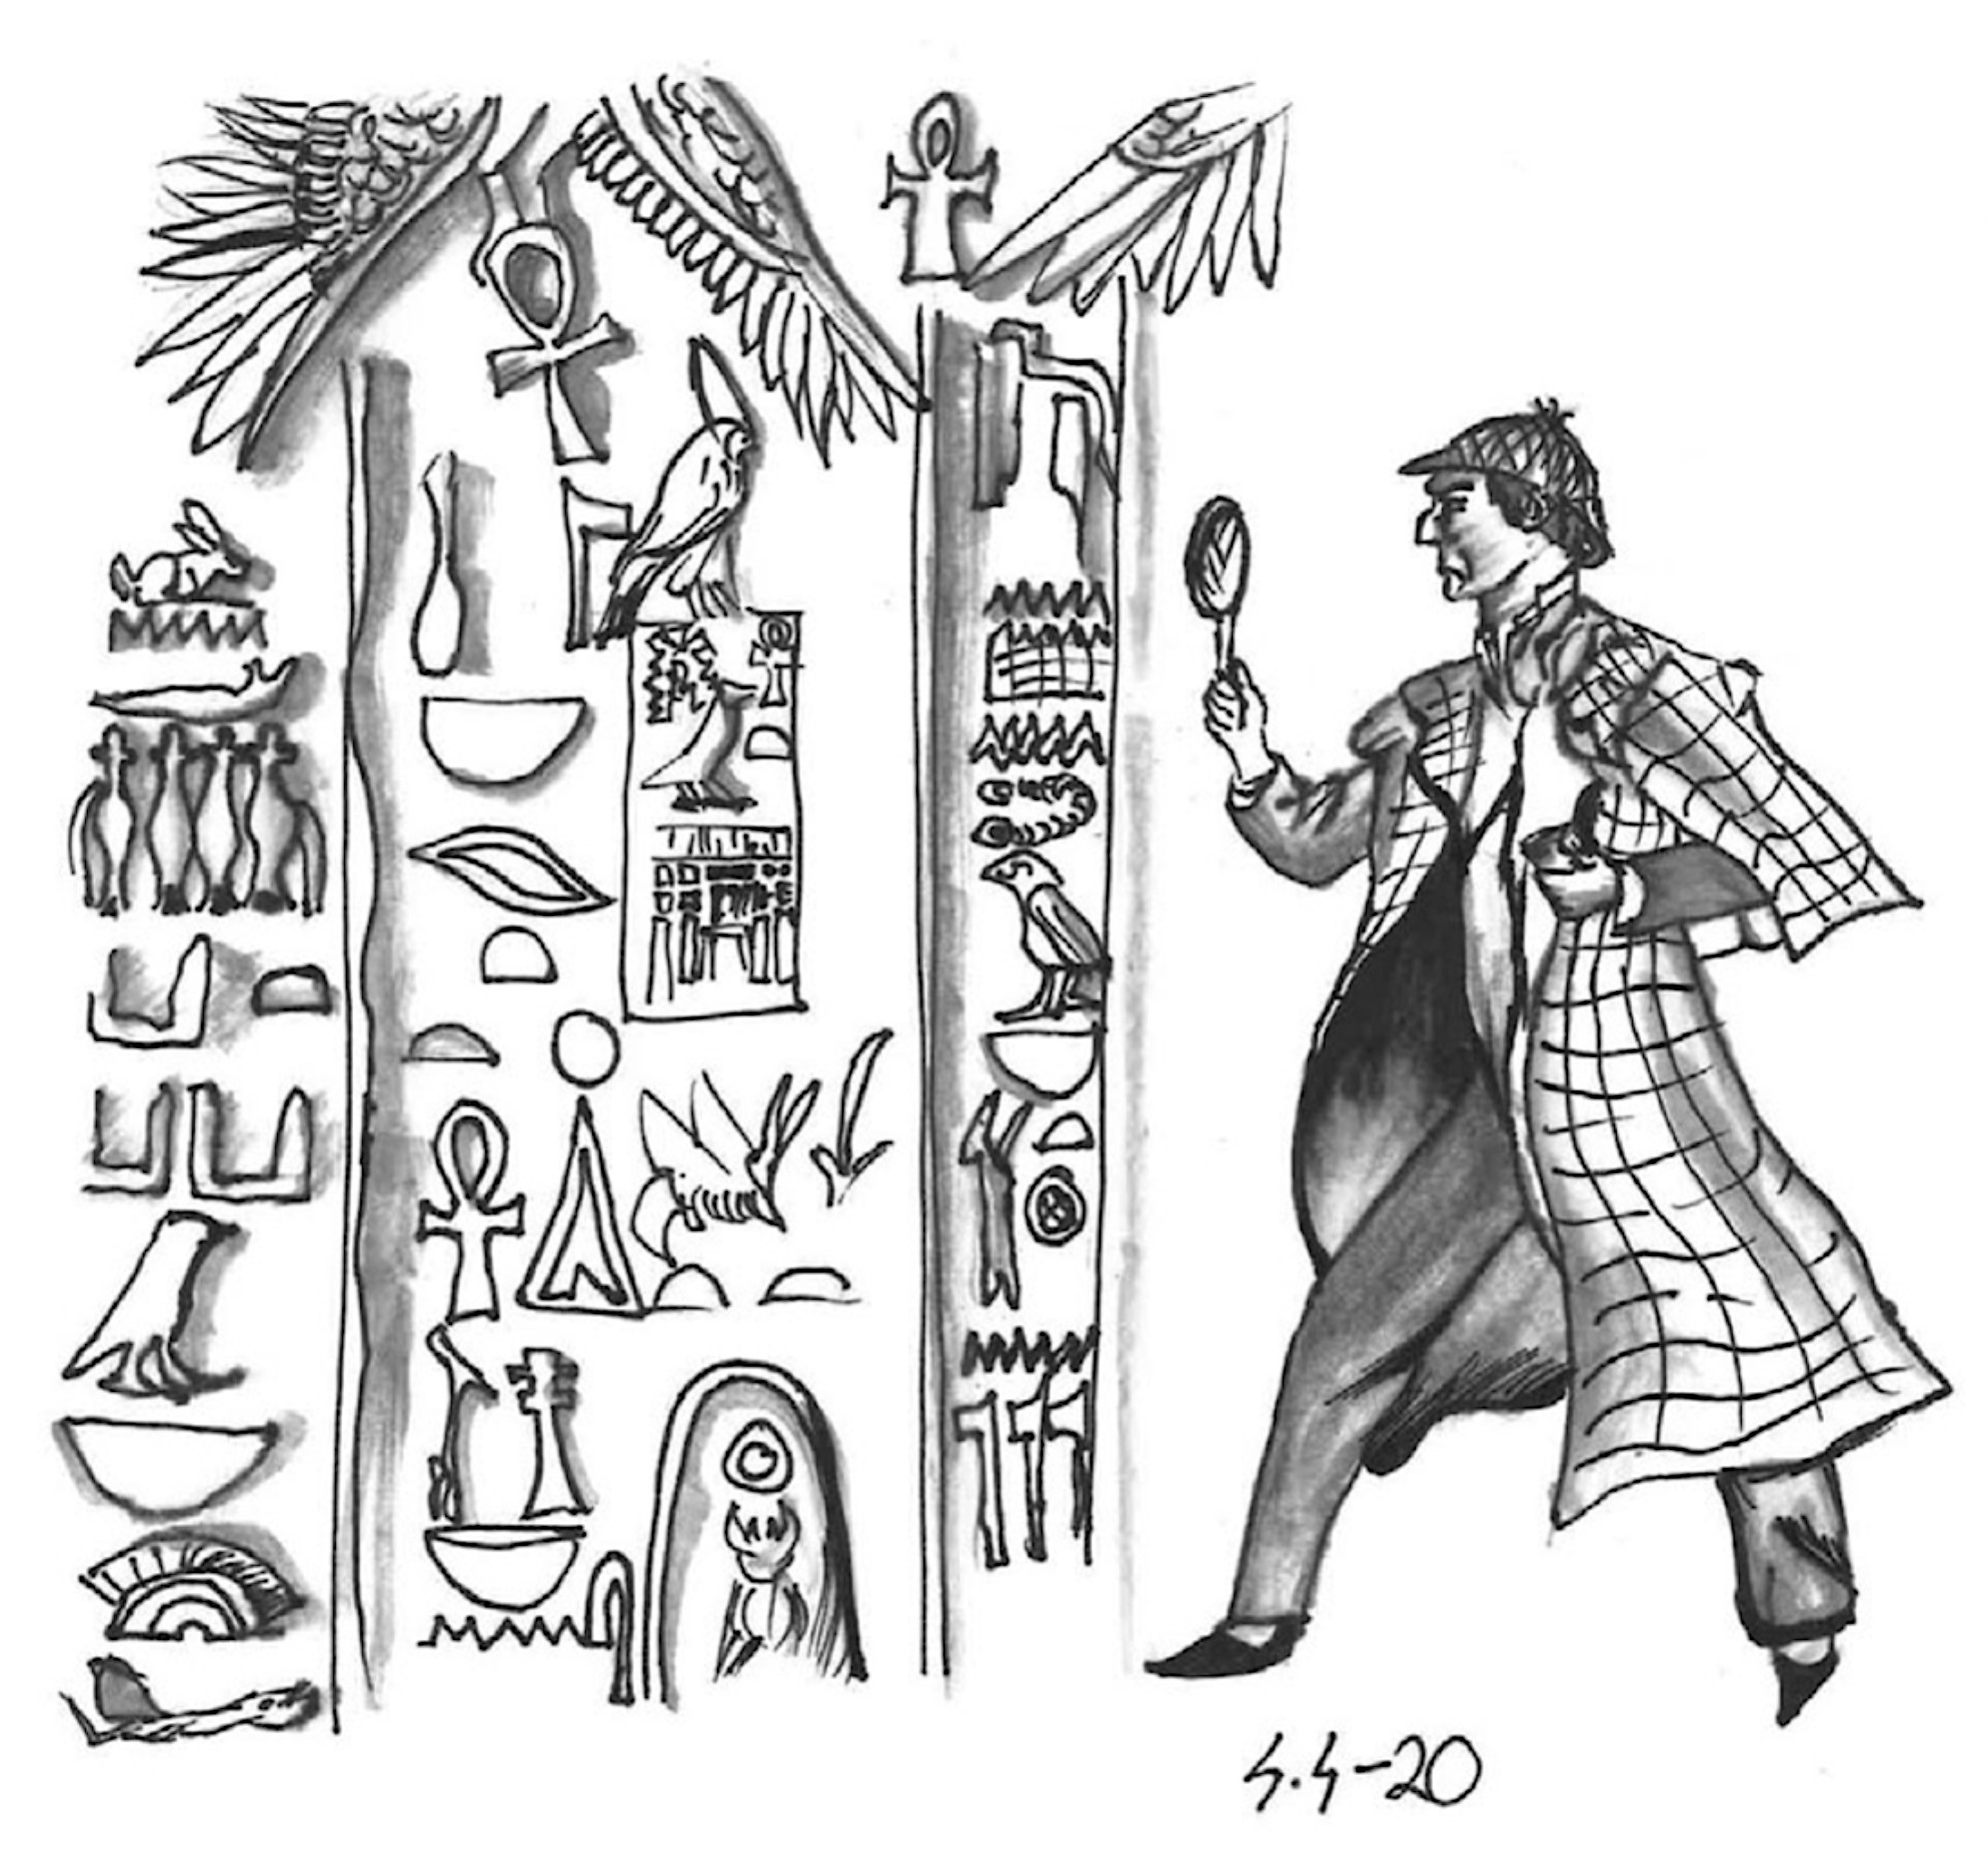 Scherlok Holmesin oloinen henkilö tutkimassa hieroglyfeja.